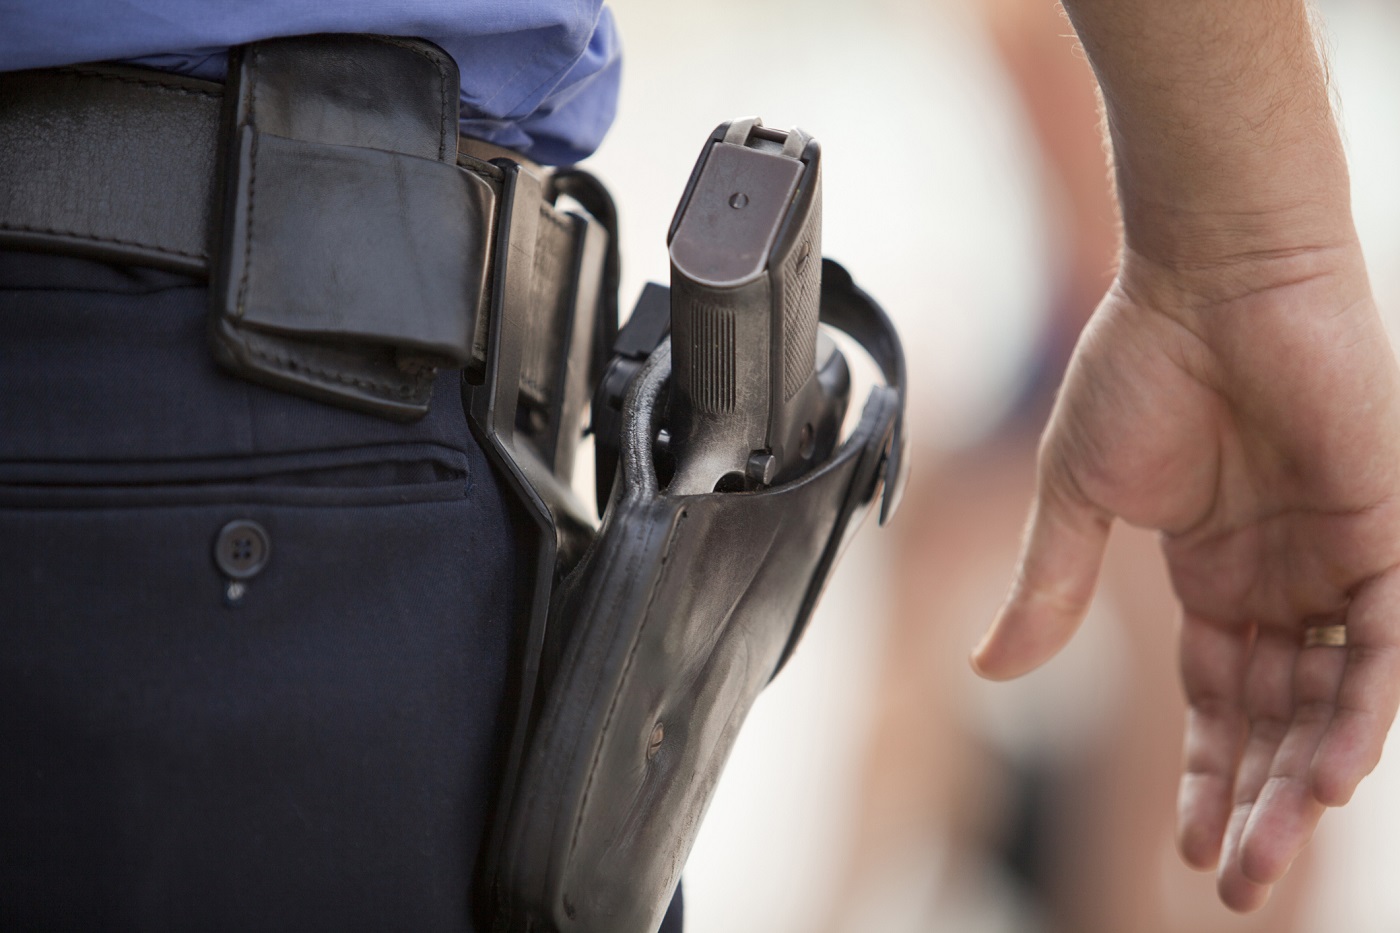 L'adolescent a tenté de s'emparer de l'arme de service d'un policier, selon une source policière - Illustration © iStock